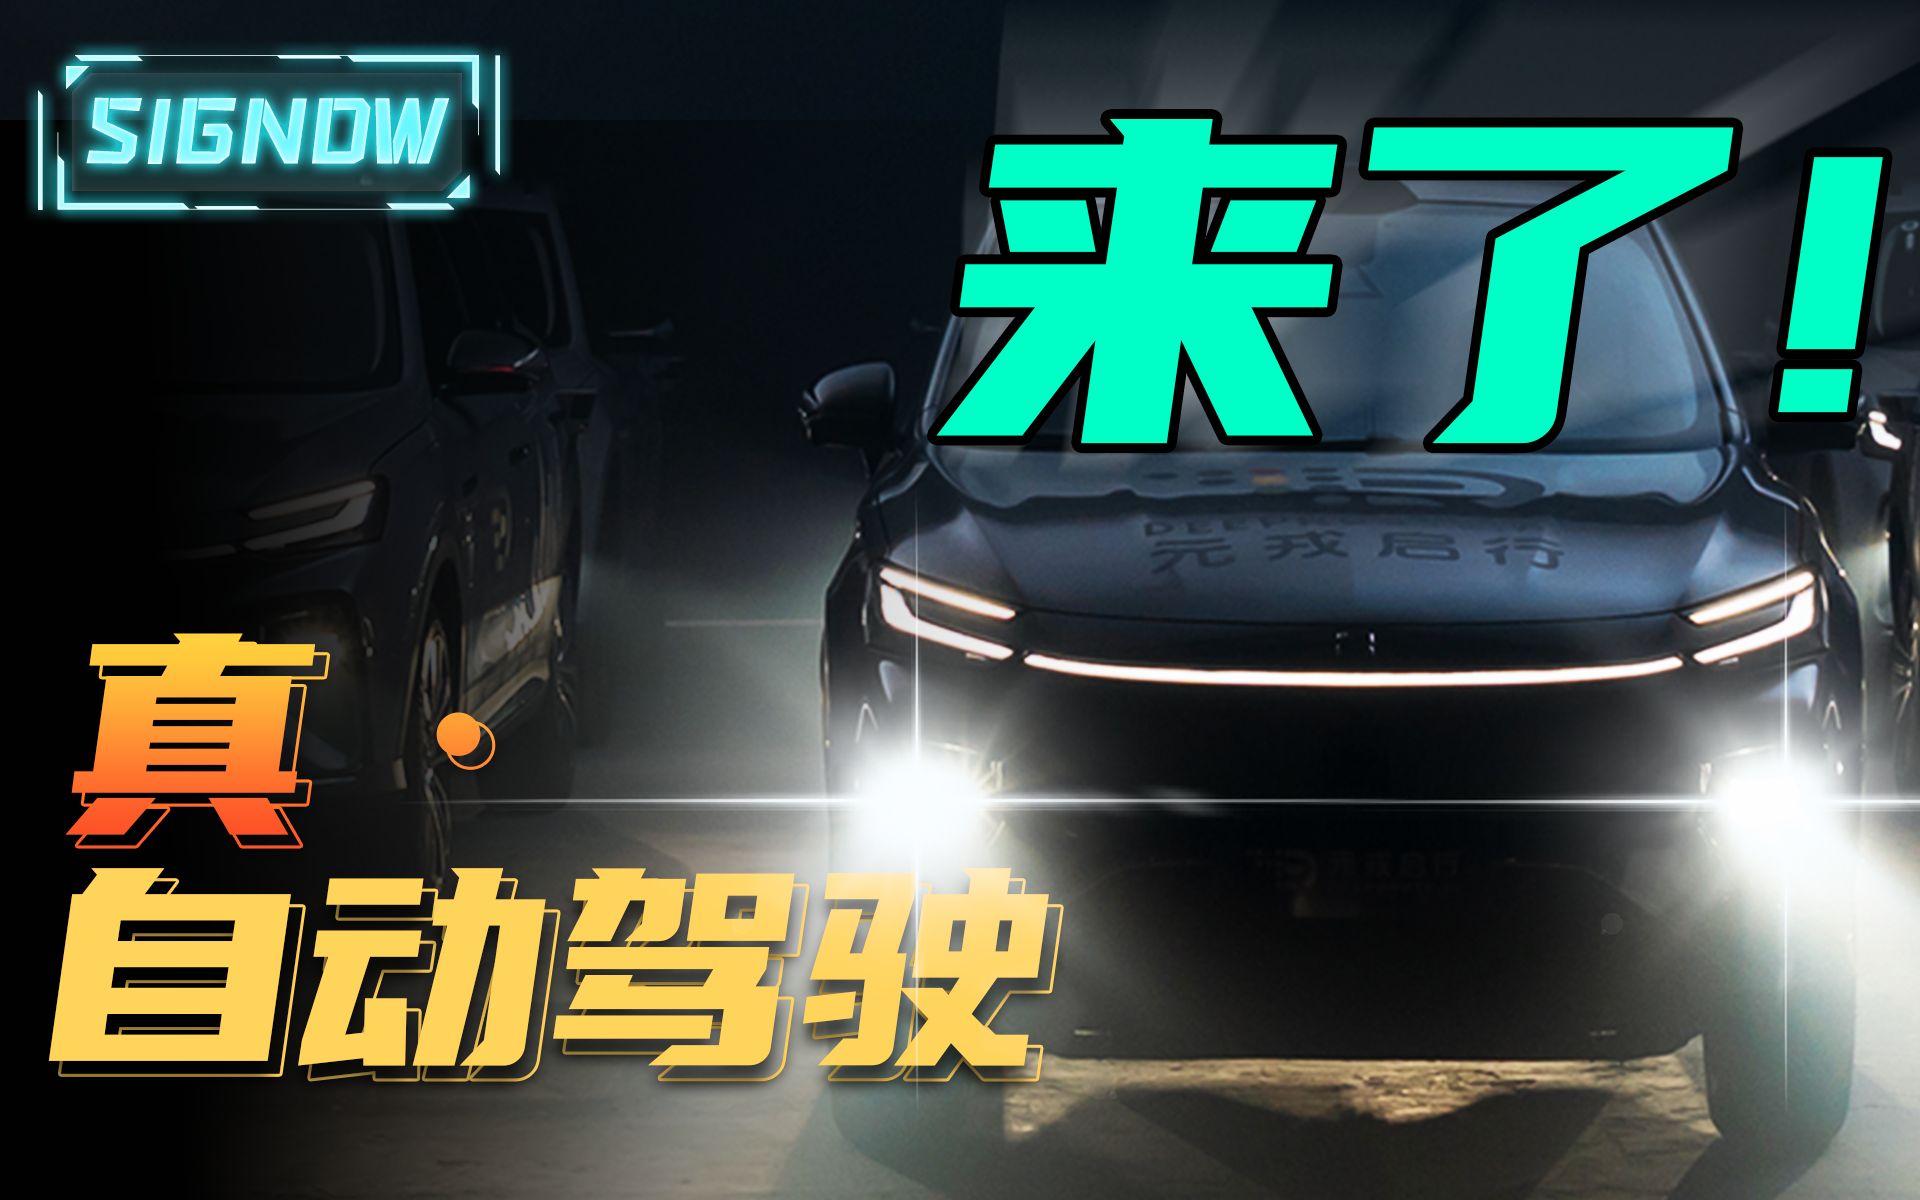 无人驾驶出租车 落地深圳 已成现实「SIGNOW」